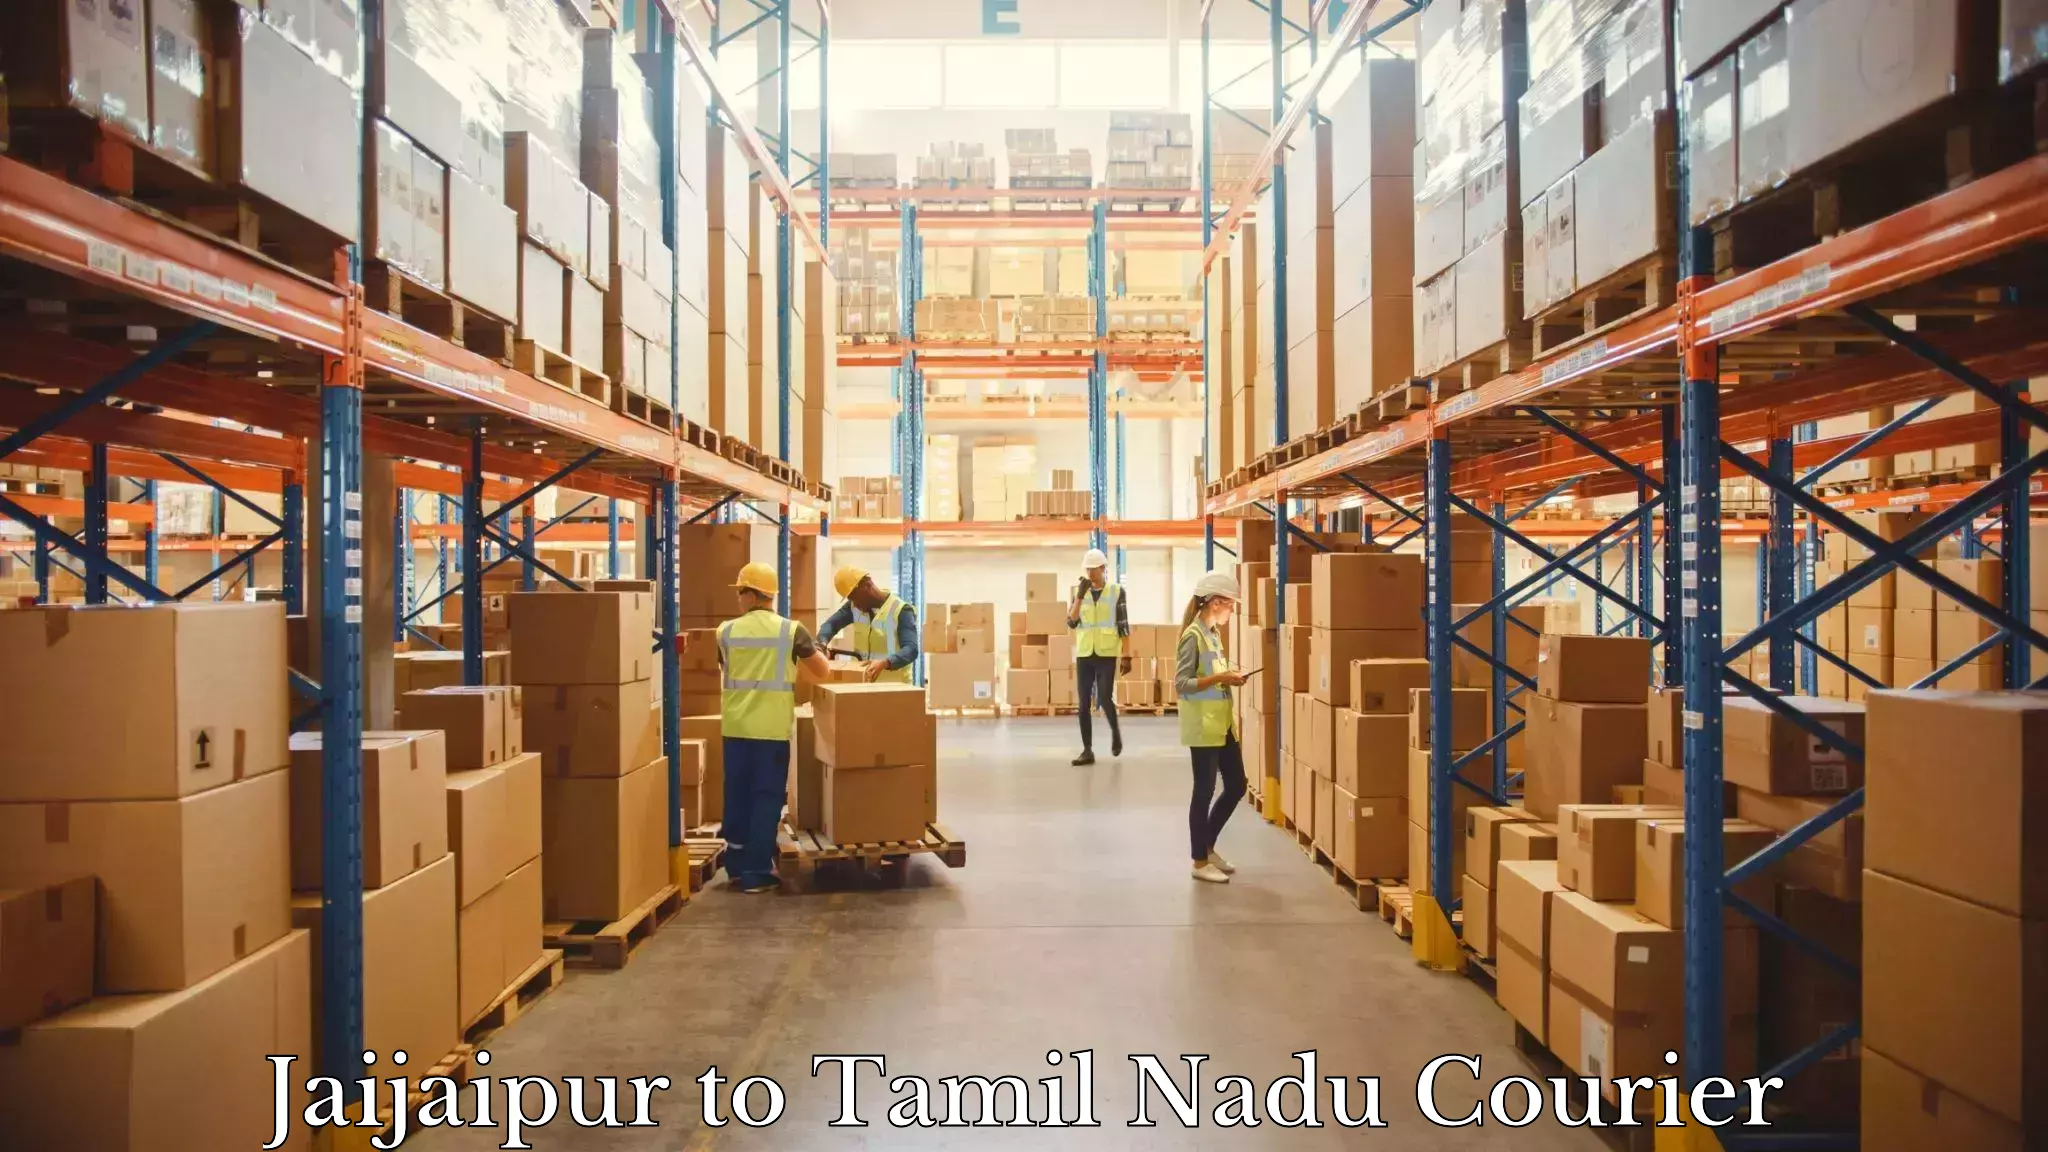 Nationwide parcel services Jaijaipur to Panruti